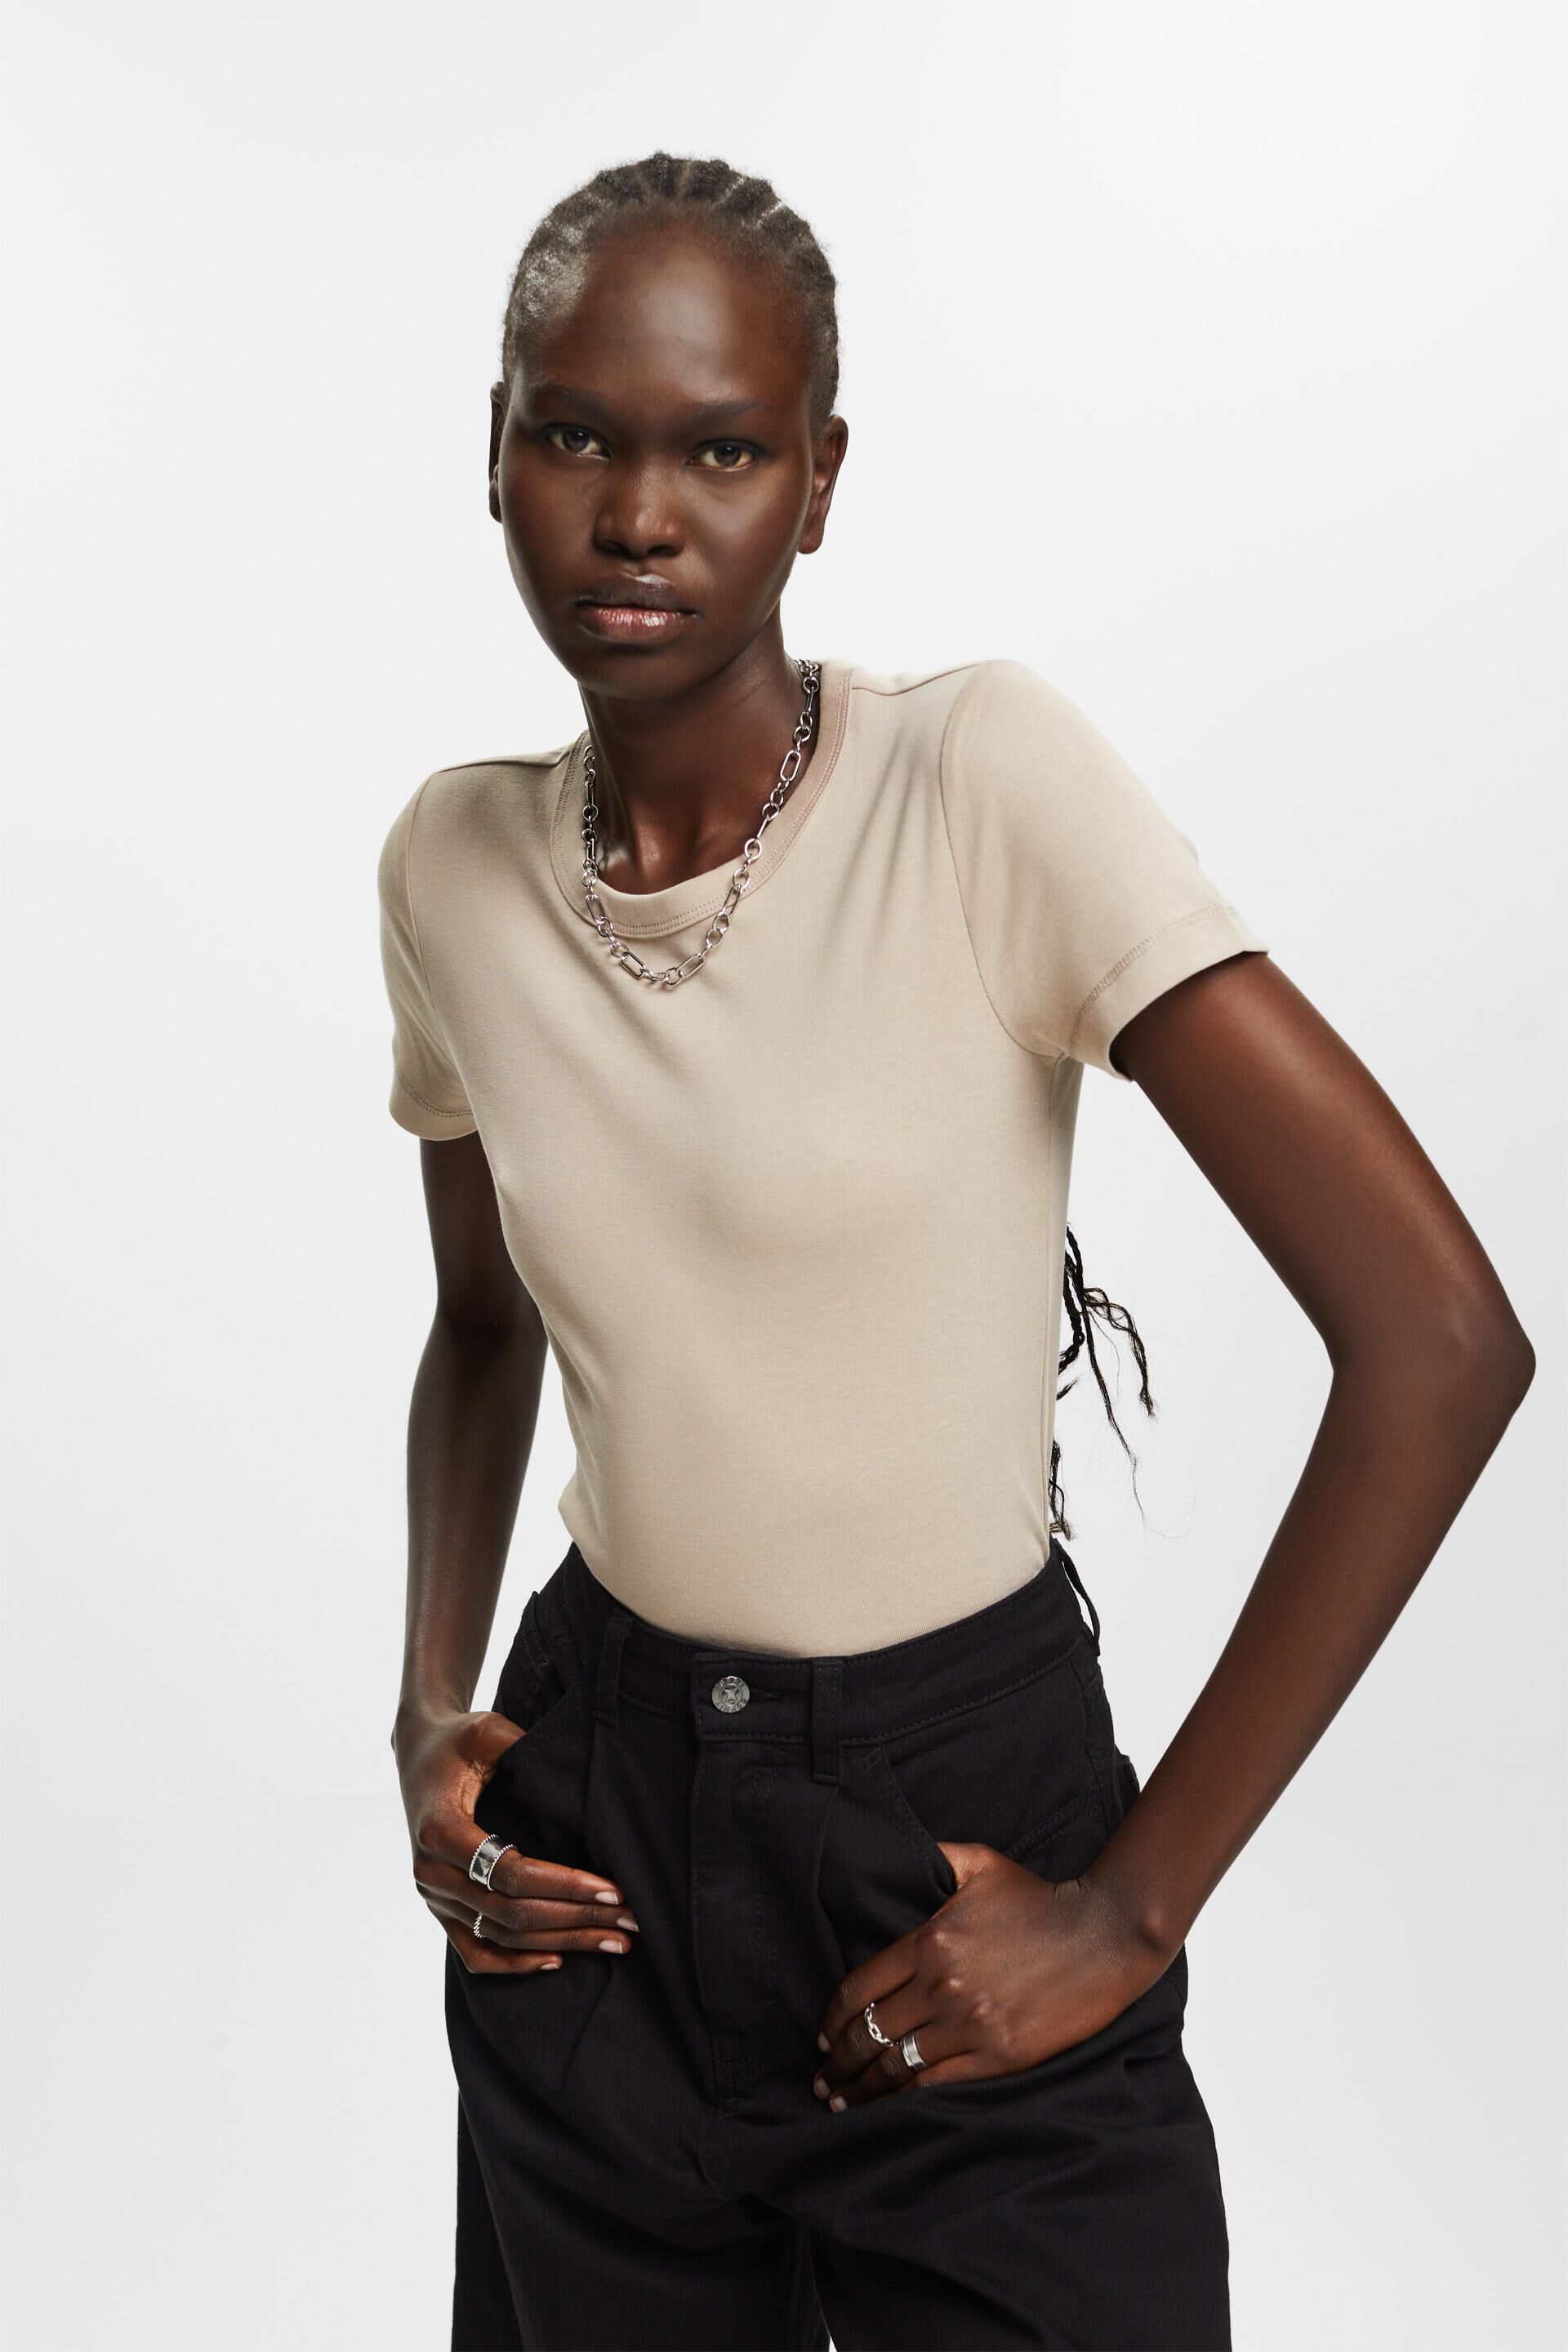 Esprit Baumwolle % mit Rundhalsausschnitt, T-Shirt 100